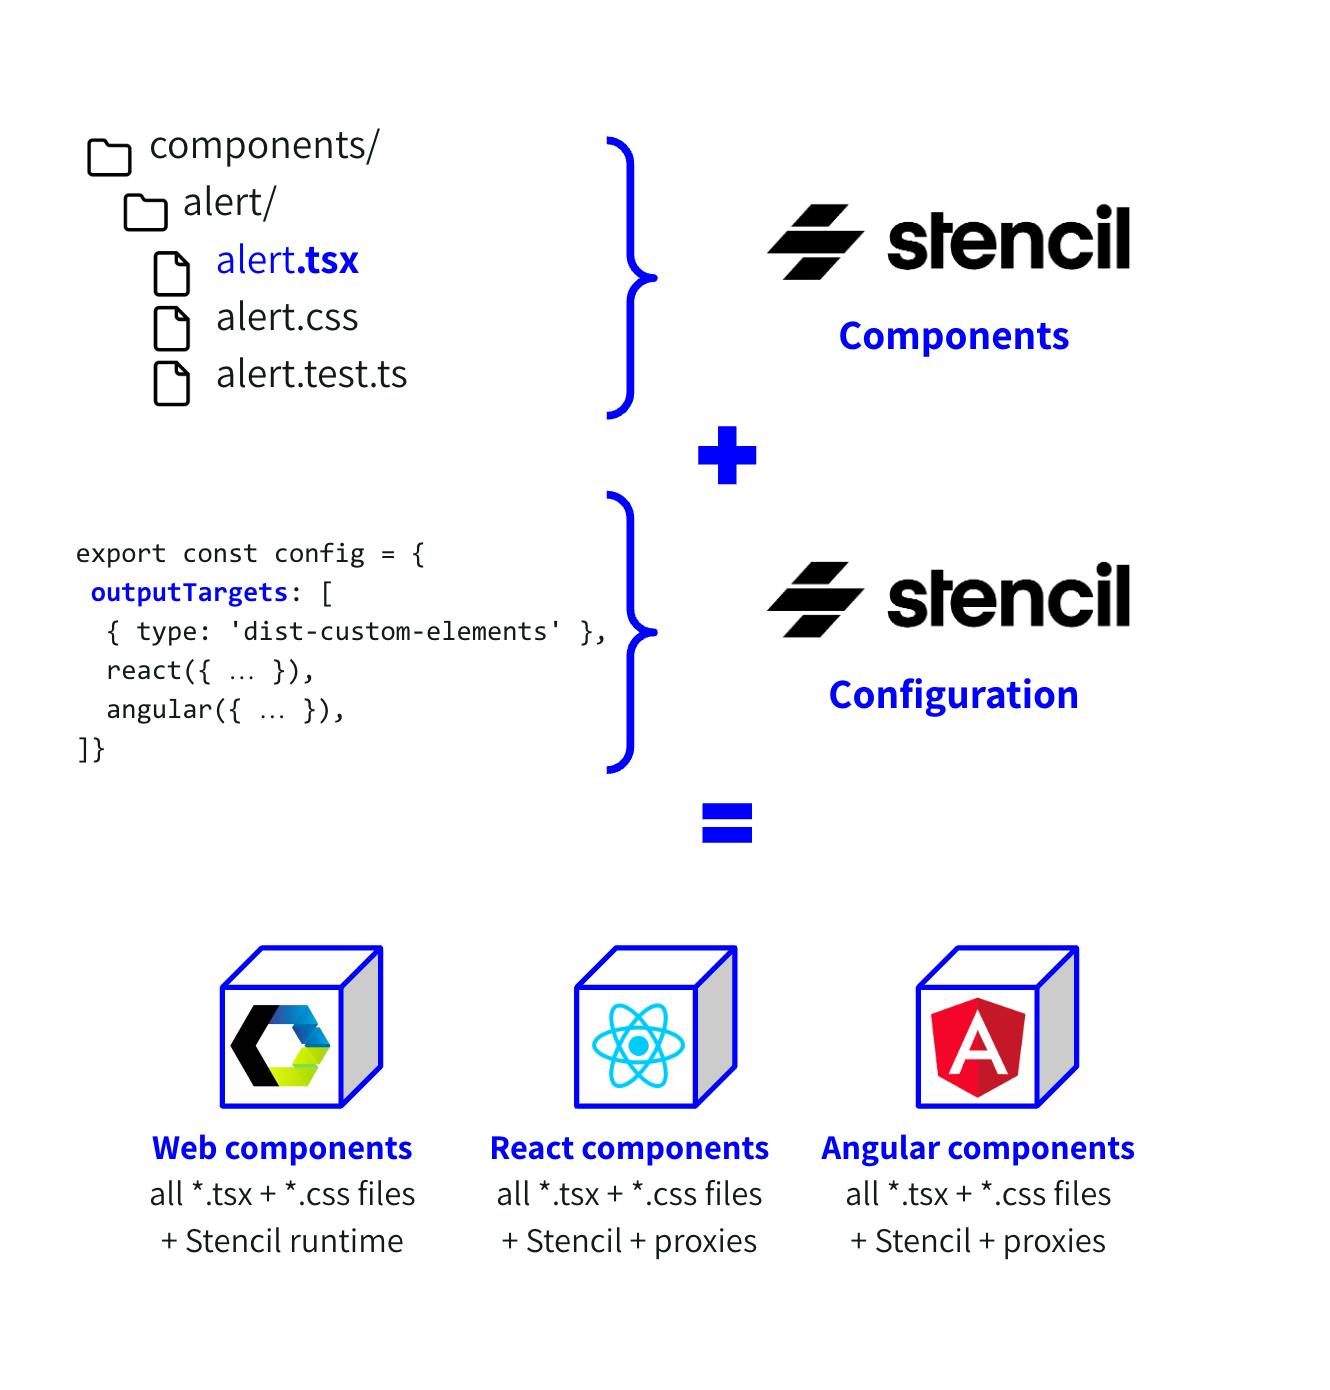 stencil components + stencil configuration = web components, react components and angular components